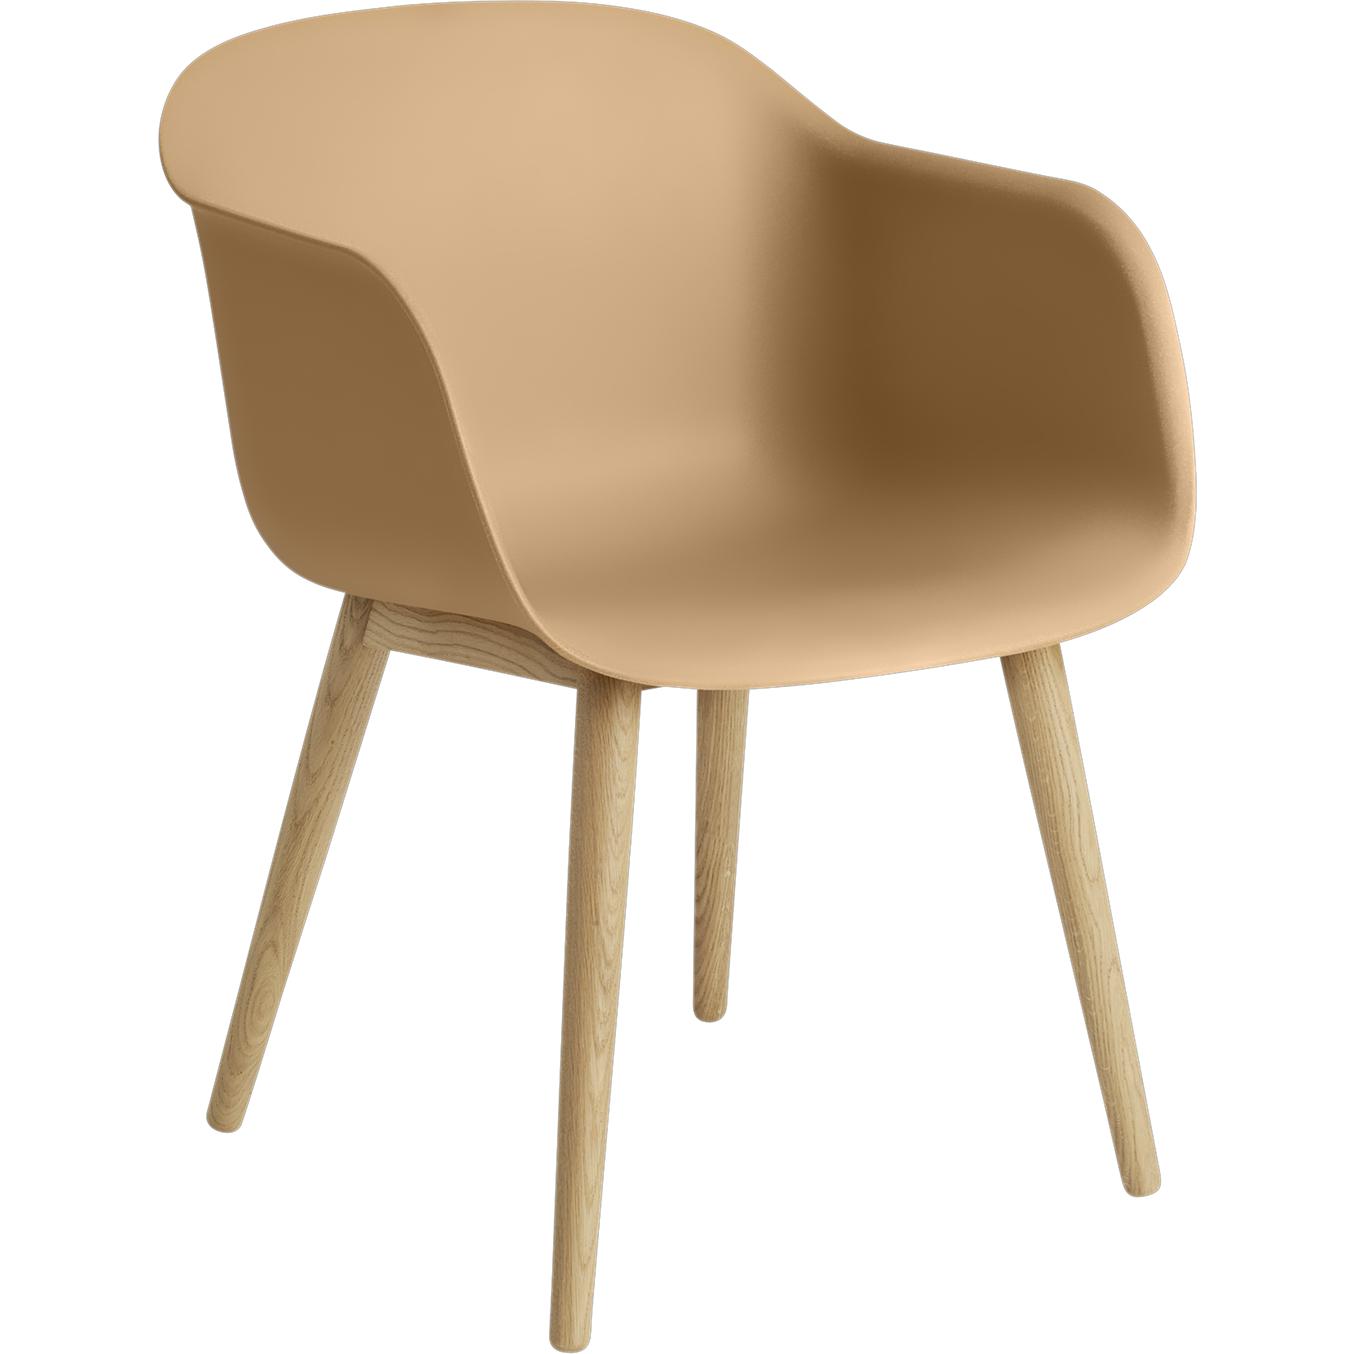 Base de bois de fauteuil en fibre Muuto, siège de fibre, bœuf / chêne